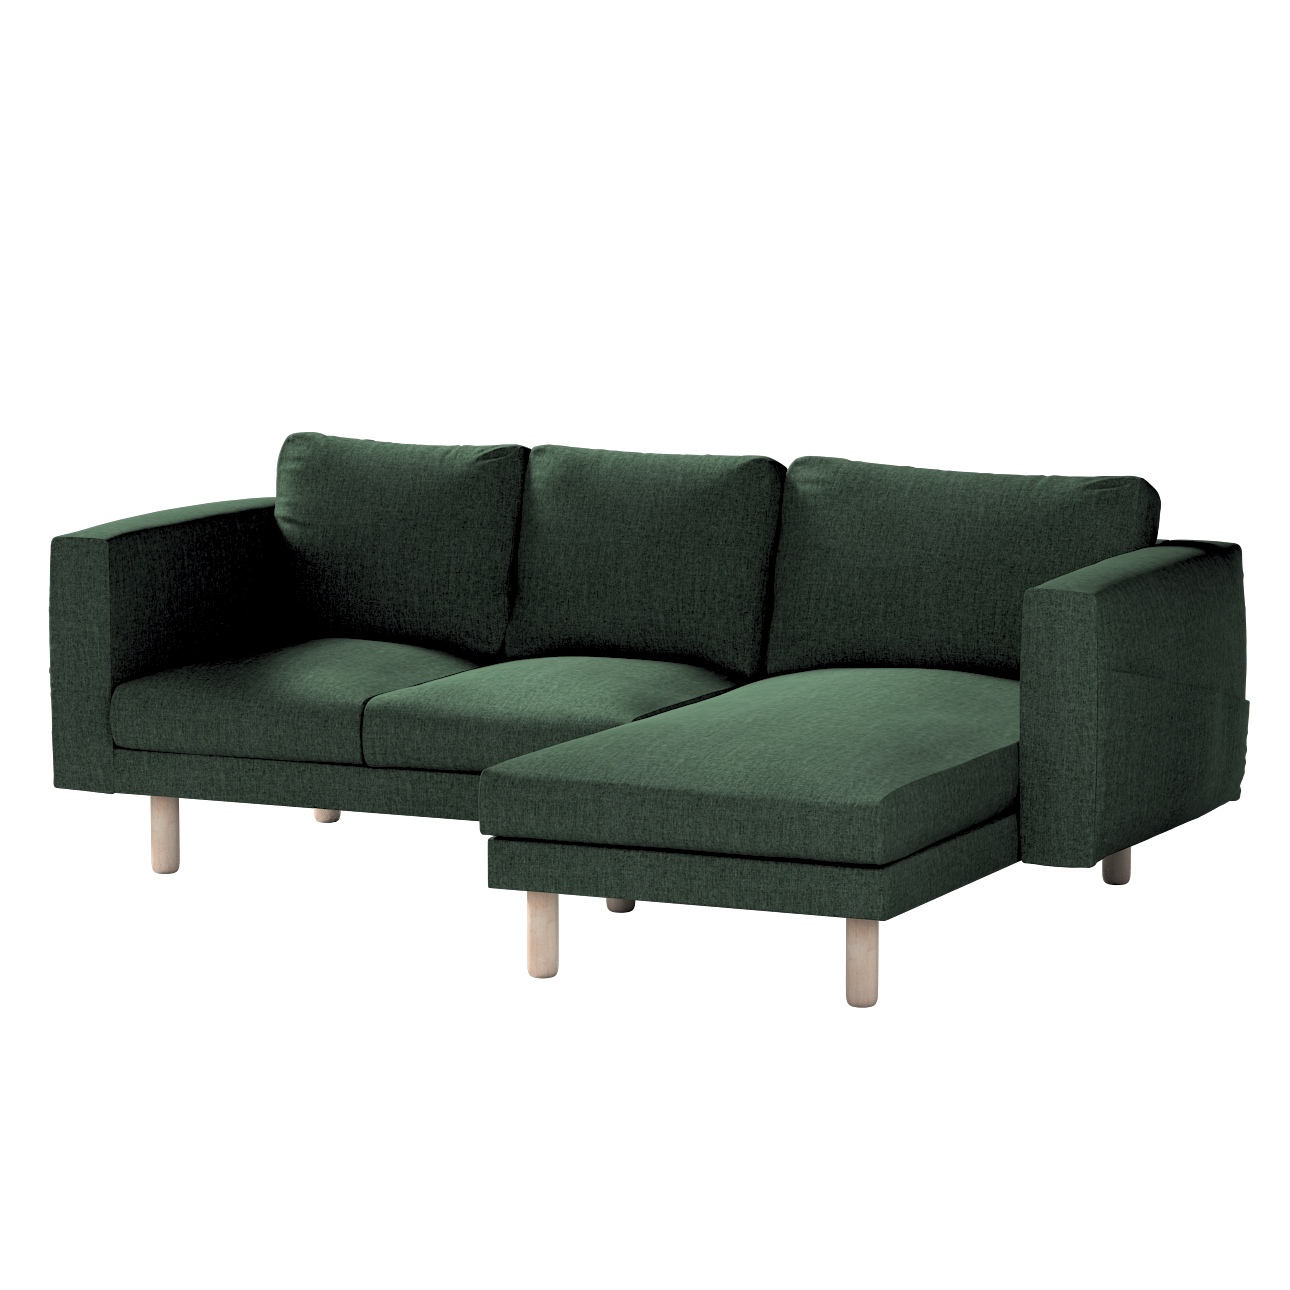 Bezug für Norsborg 3-Sitzer Sofa mit Recamiere, dunkelgrün, Norsborg Bezug günstig online kaufen